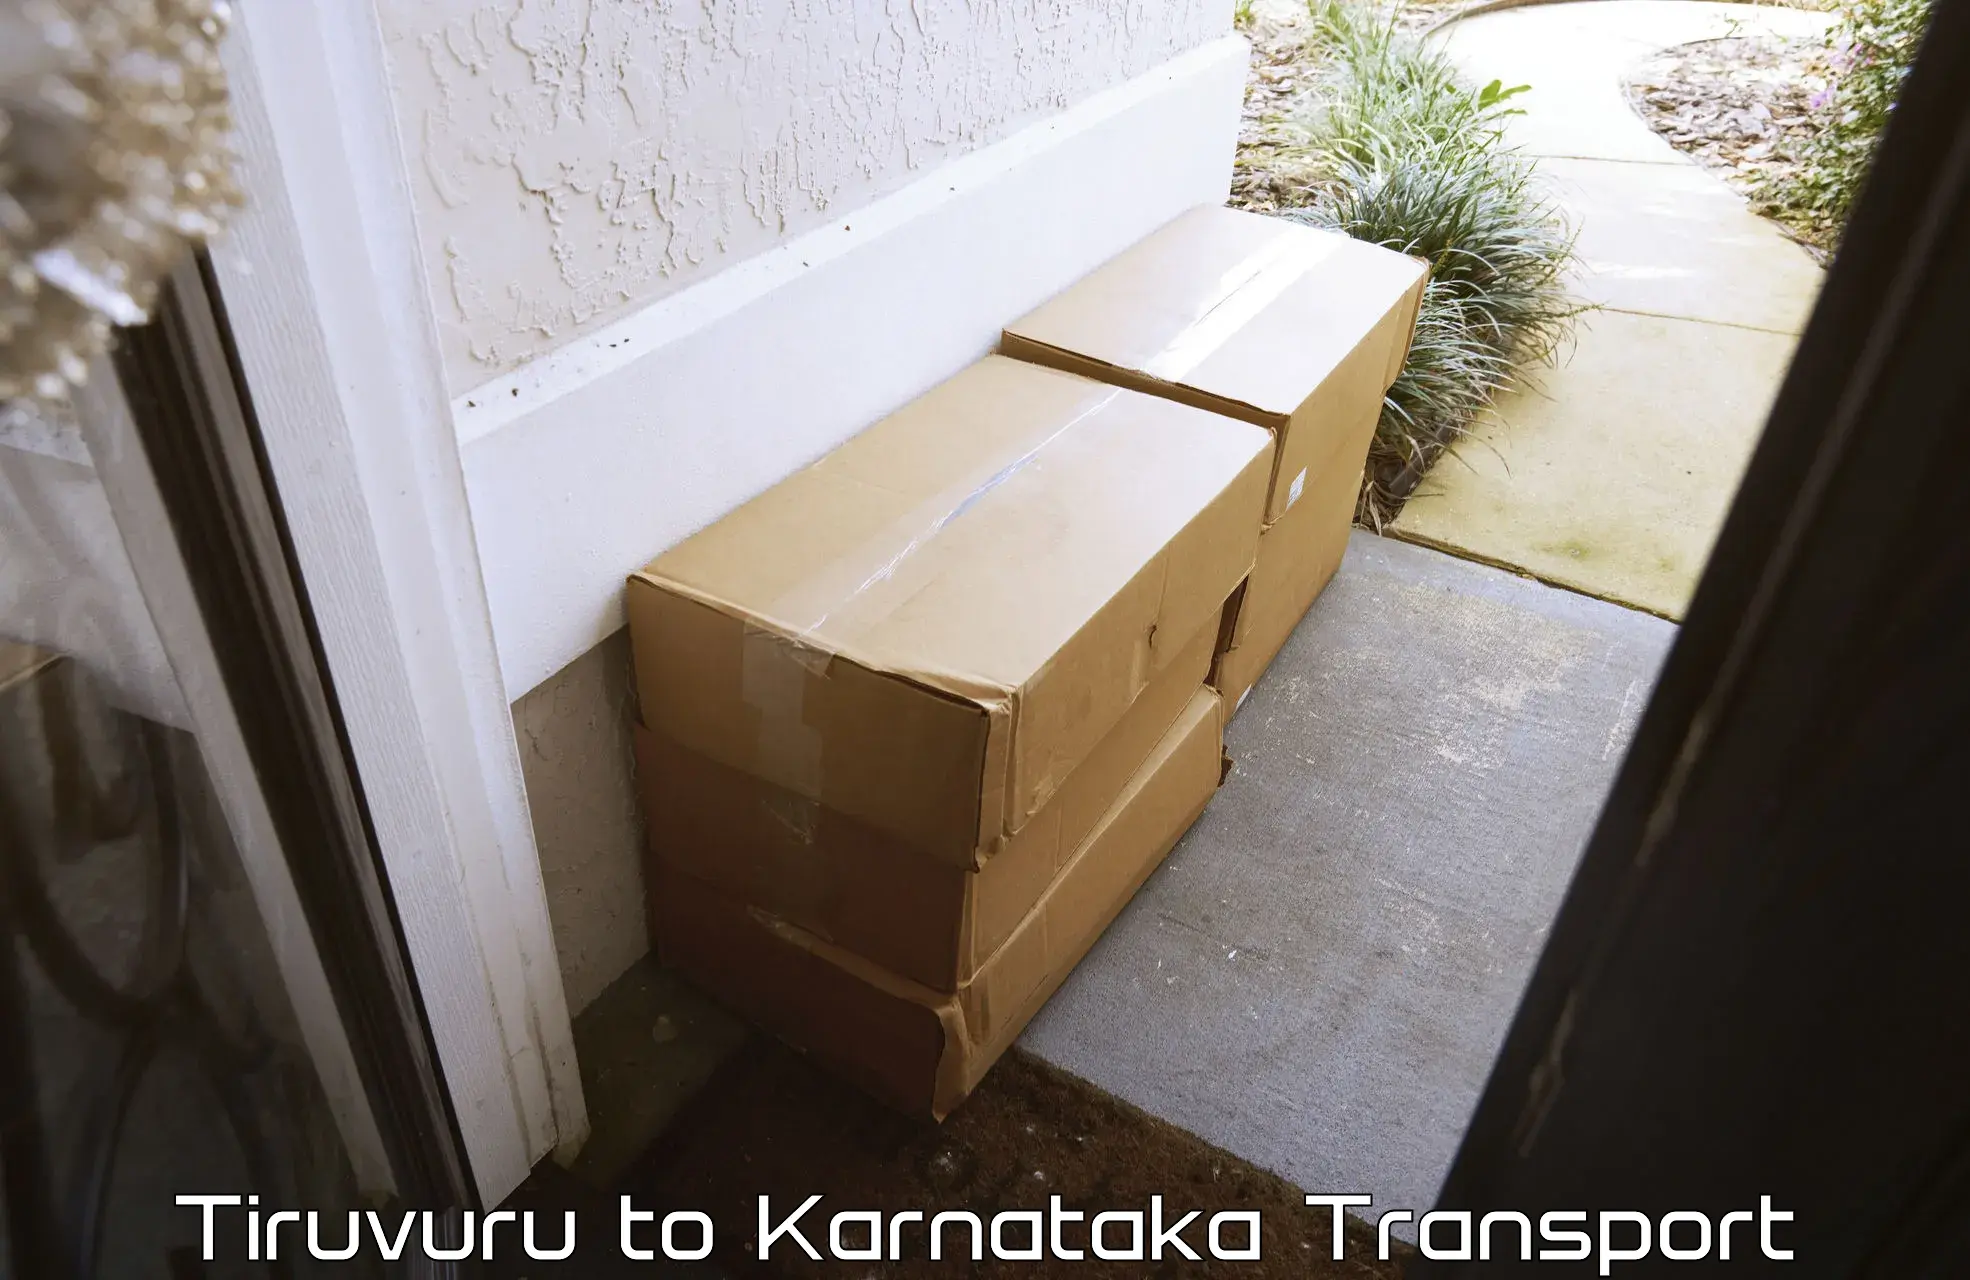 Vehicle courier services Tiruvuru to Karnataka